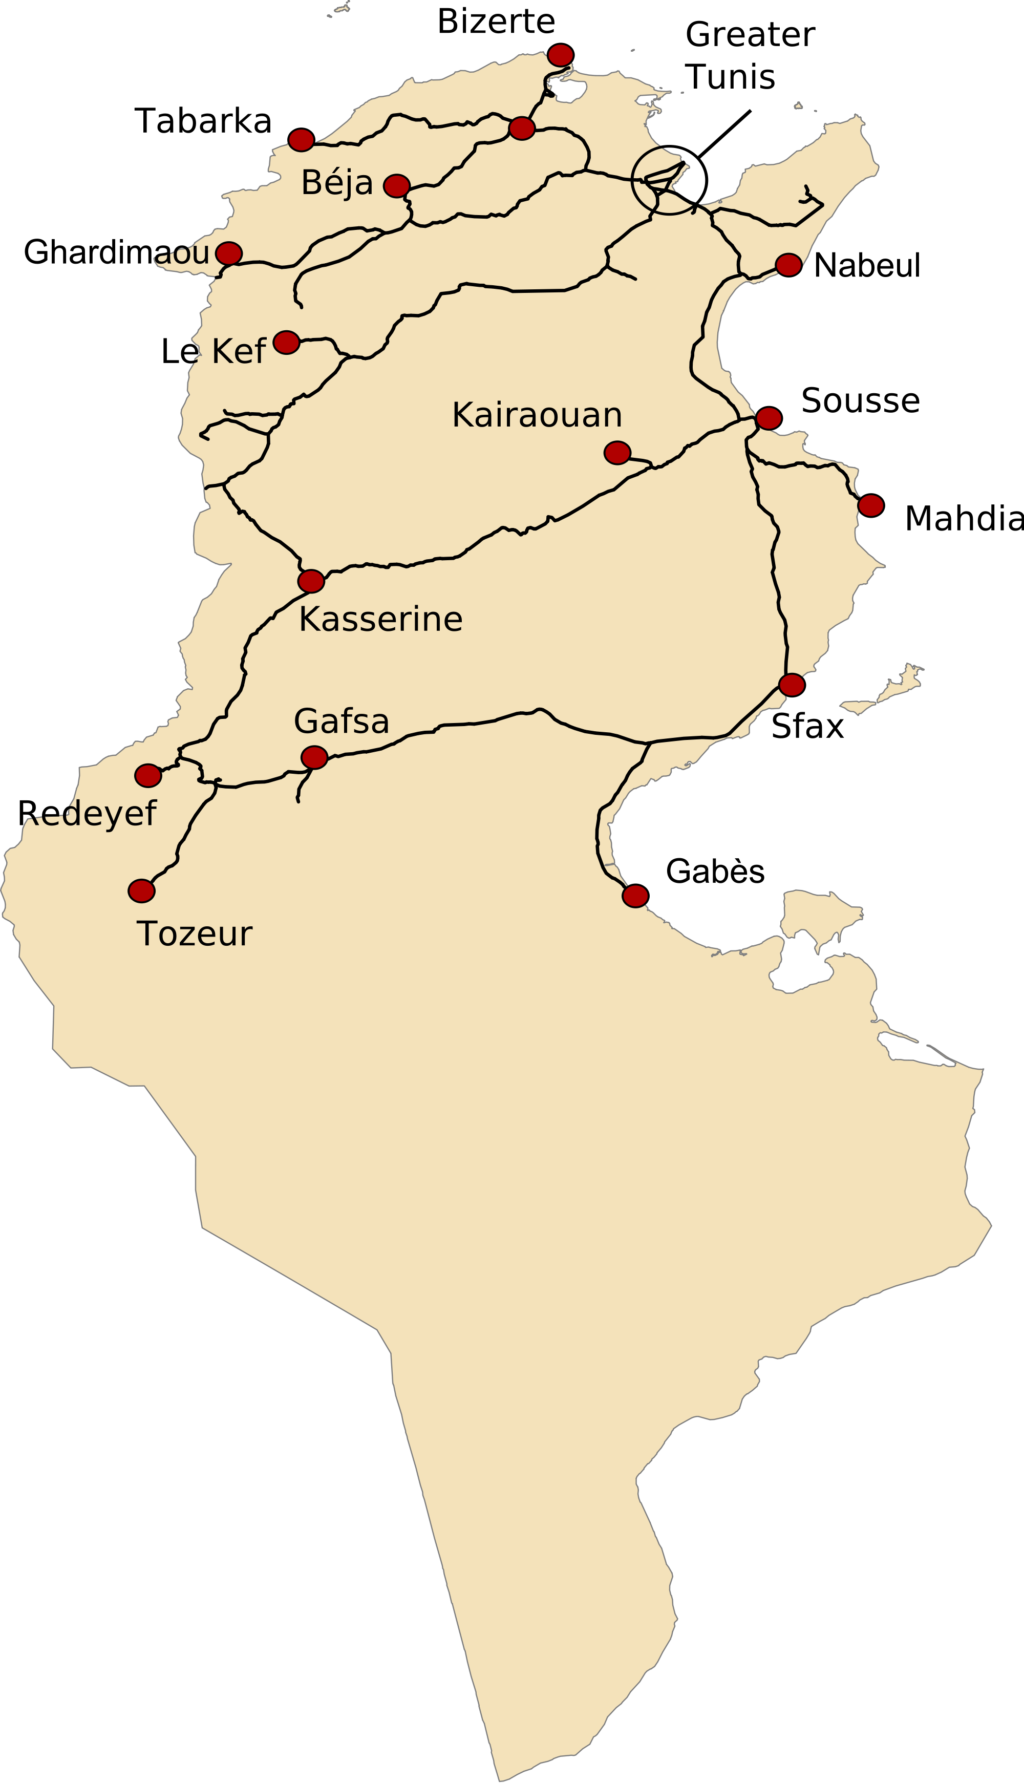 Tunisia's rail network